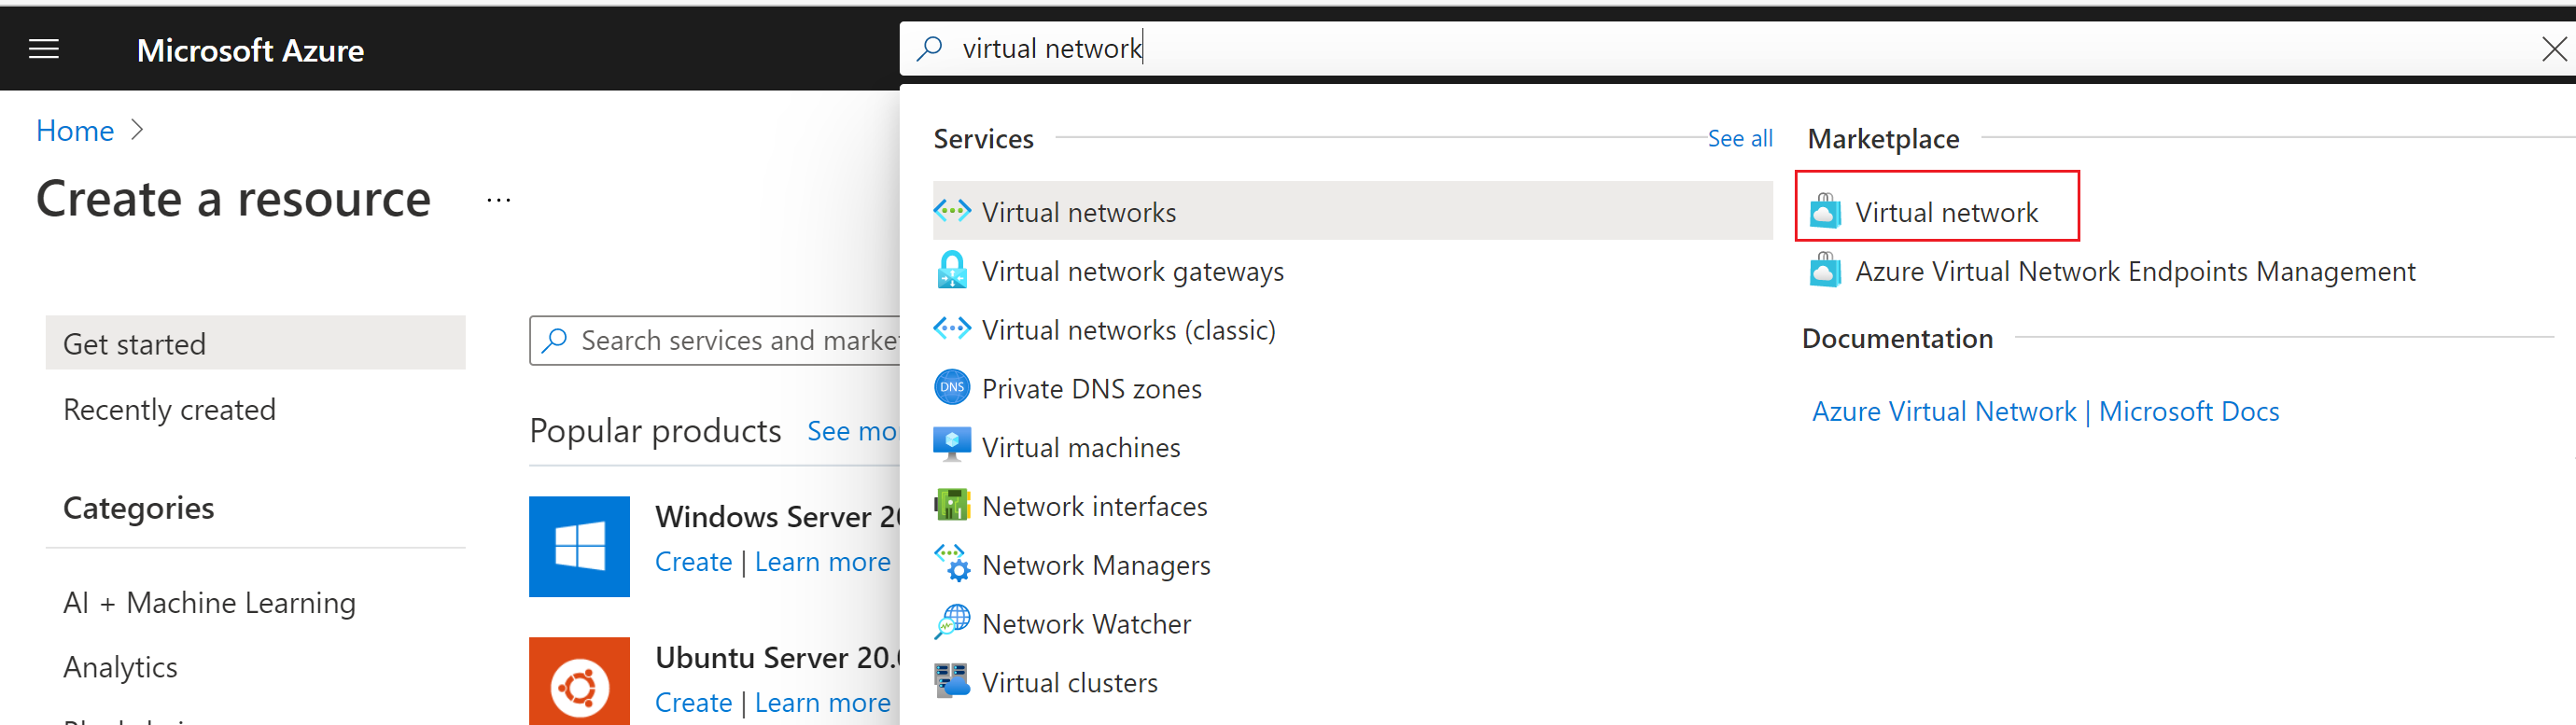 Azure portal 検索バーの結果が表示され、Marketplace から Virtual Network を選択していることを示すスクリーンショット。